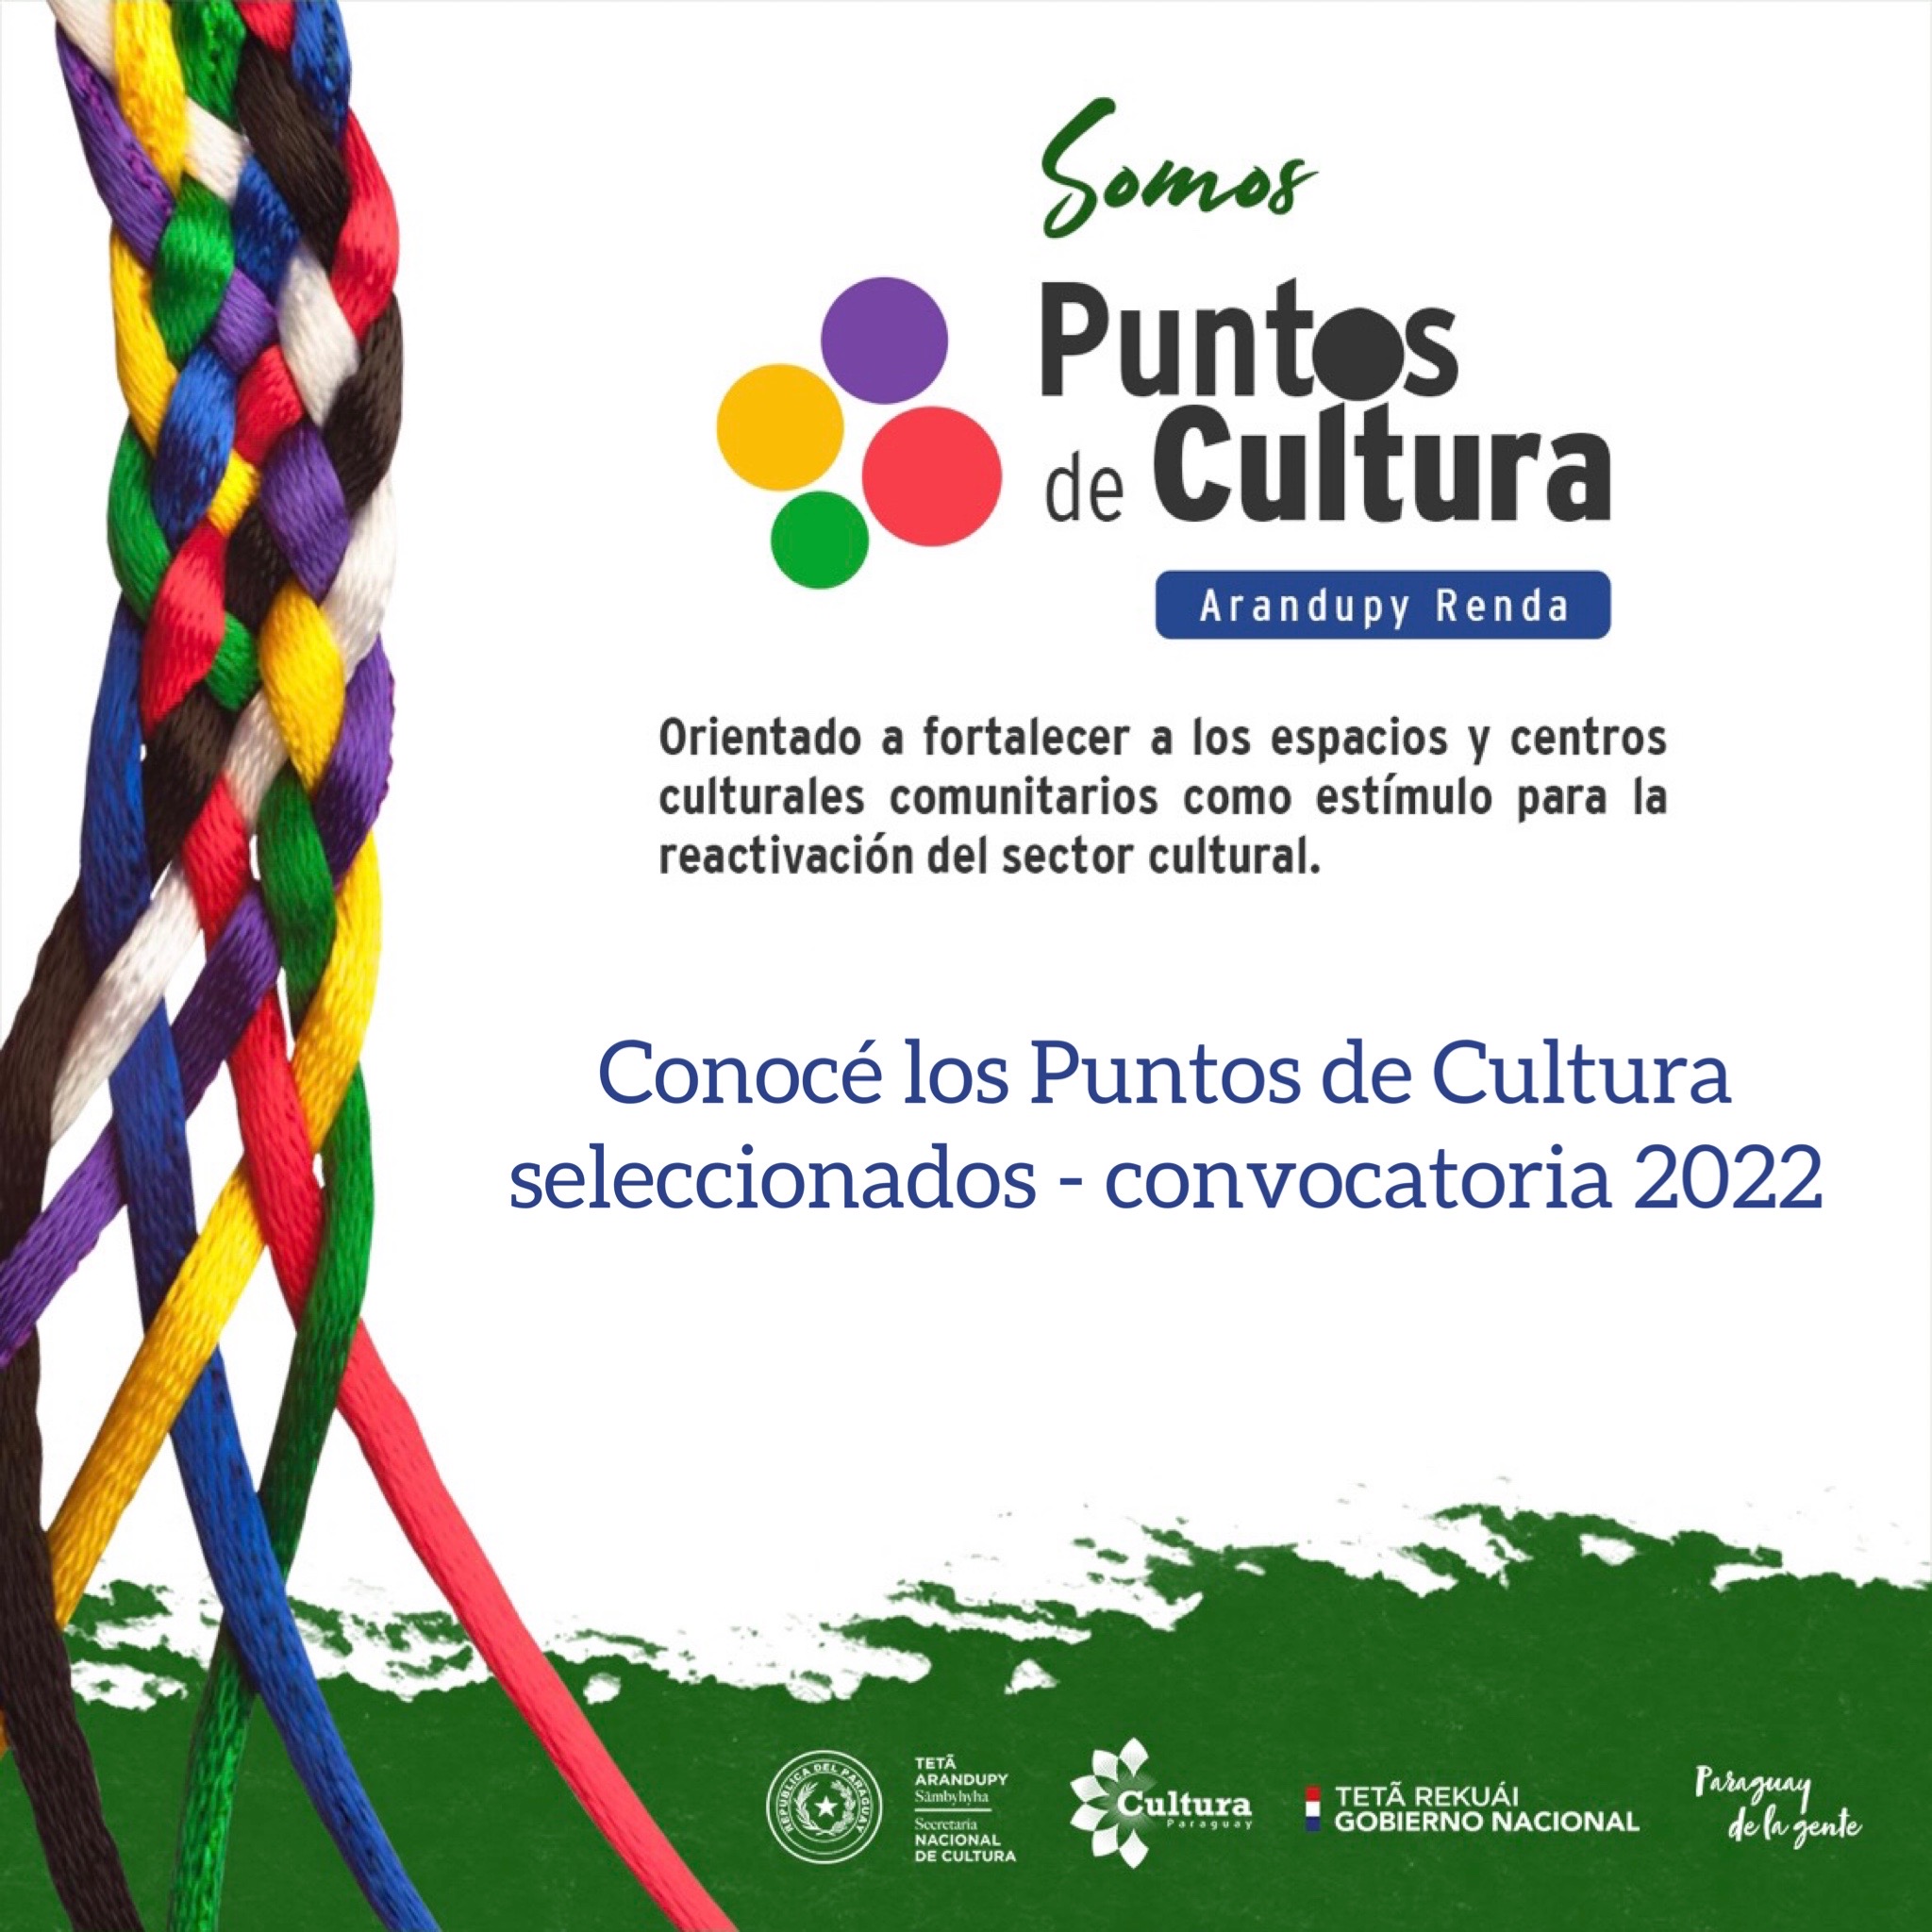 Puntos de Cultura seleccionados en la convocatoria 2022 imagen